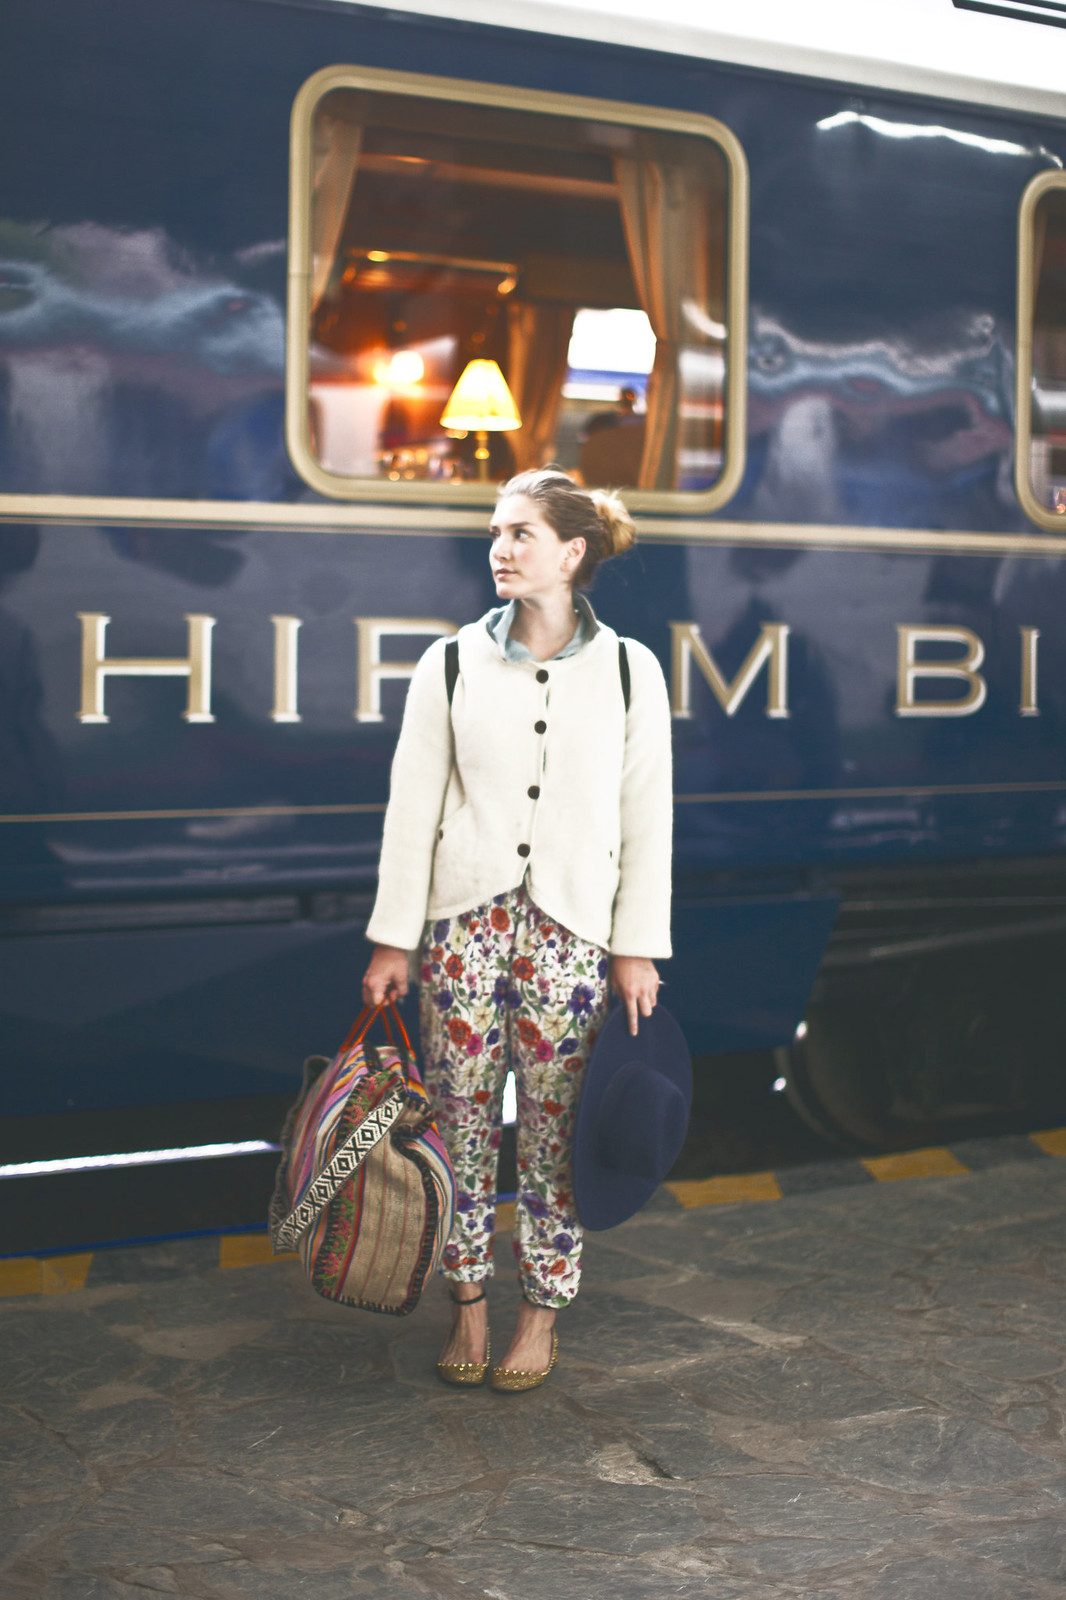 Hiram Bingham Orient Express luxury train service, Machu Picchu to Cusco, Peru